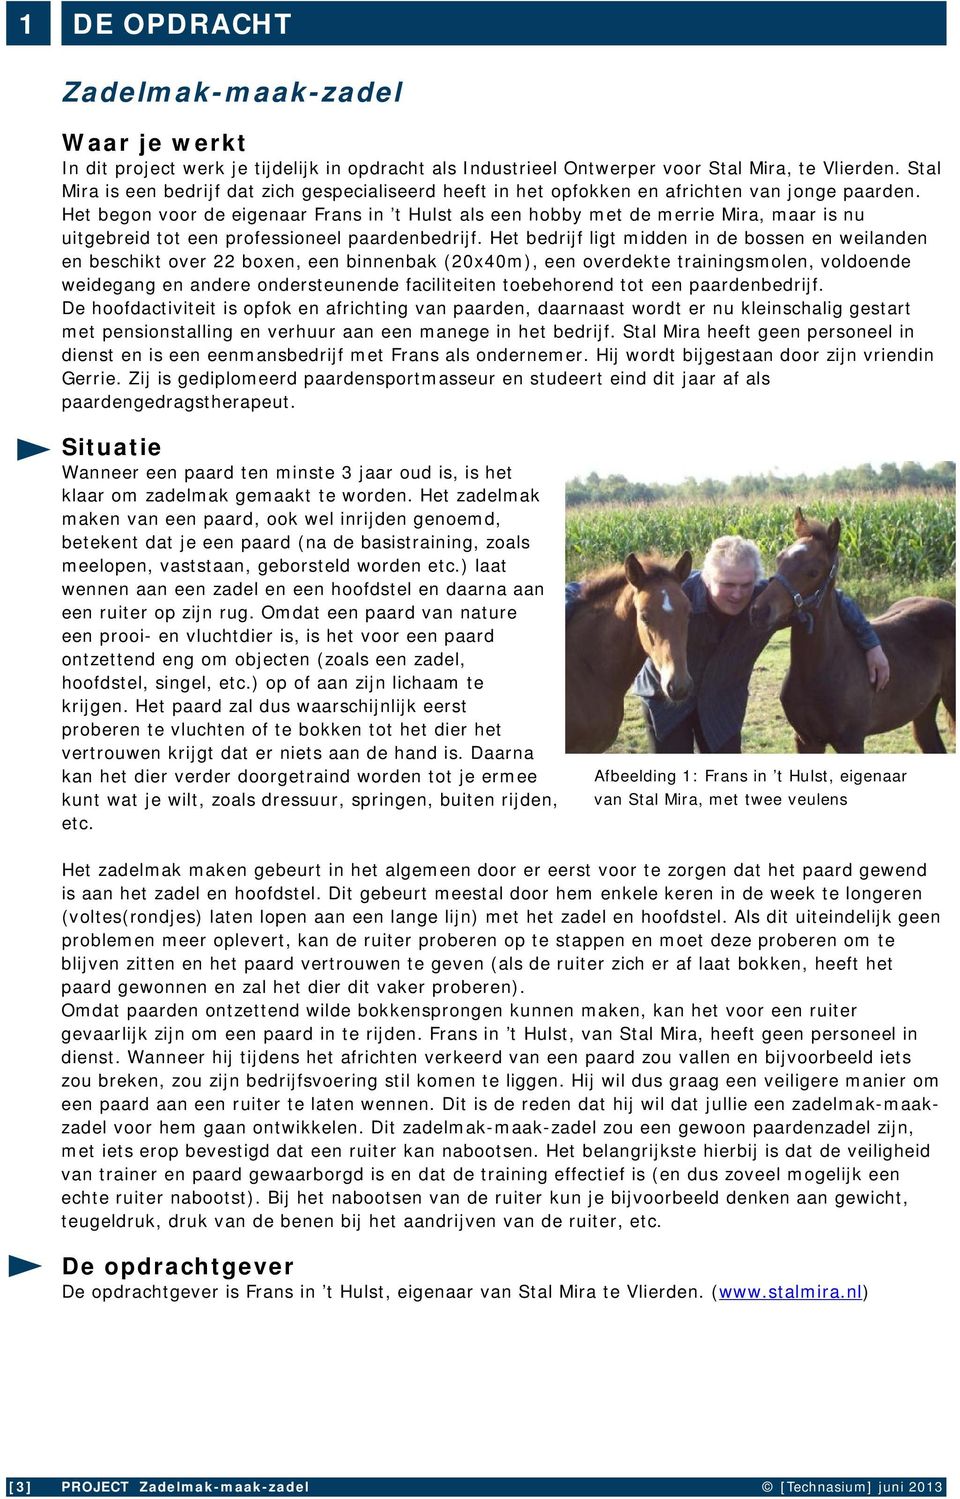 Het begon voor de eigenaar Frans in t Hulst als een hobby met de merrie Mira, maar is nu uitgebreid tot een professioneel paardenbedrijf.